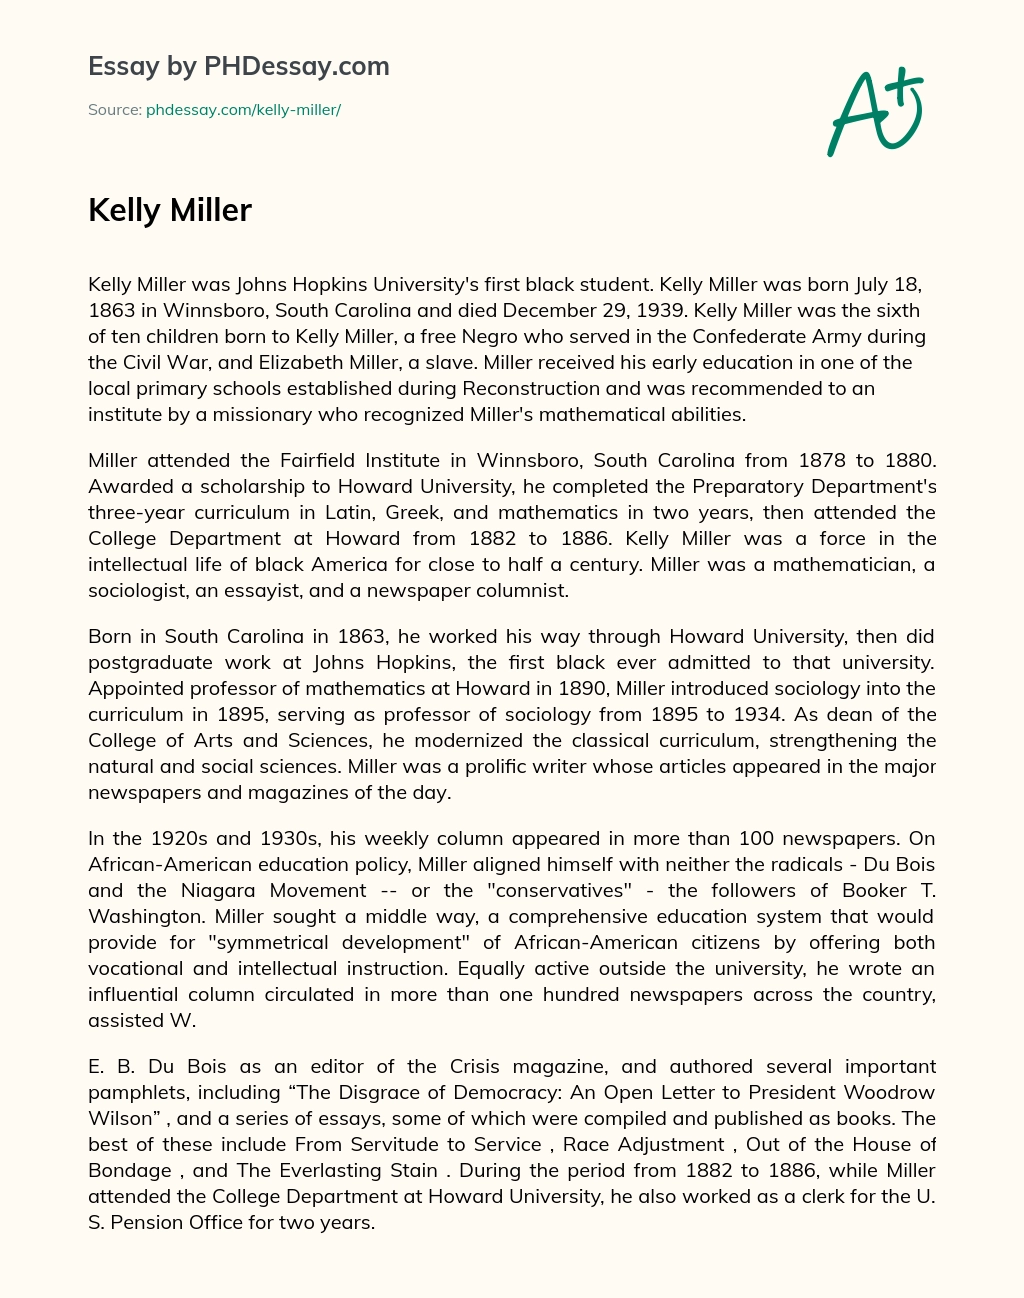 Kelly Miller essay